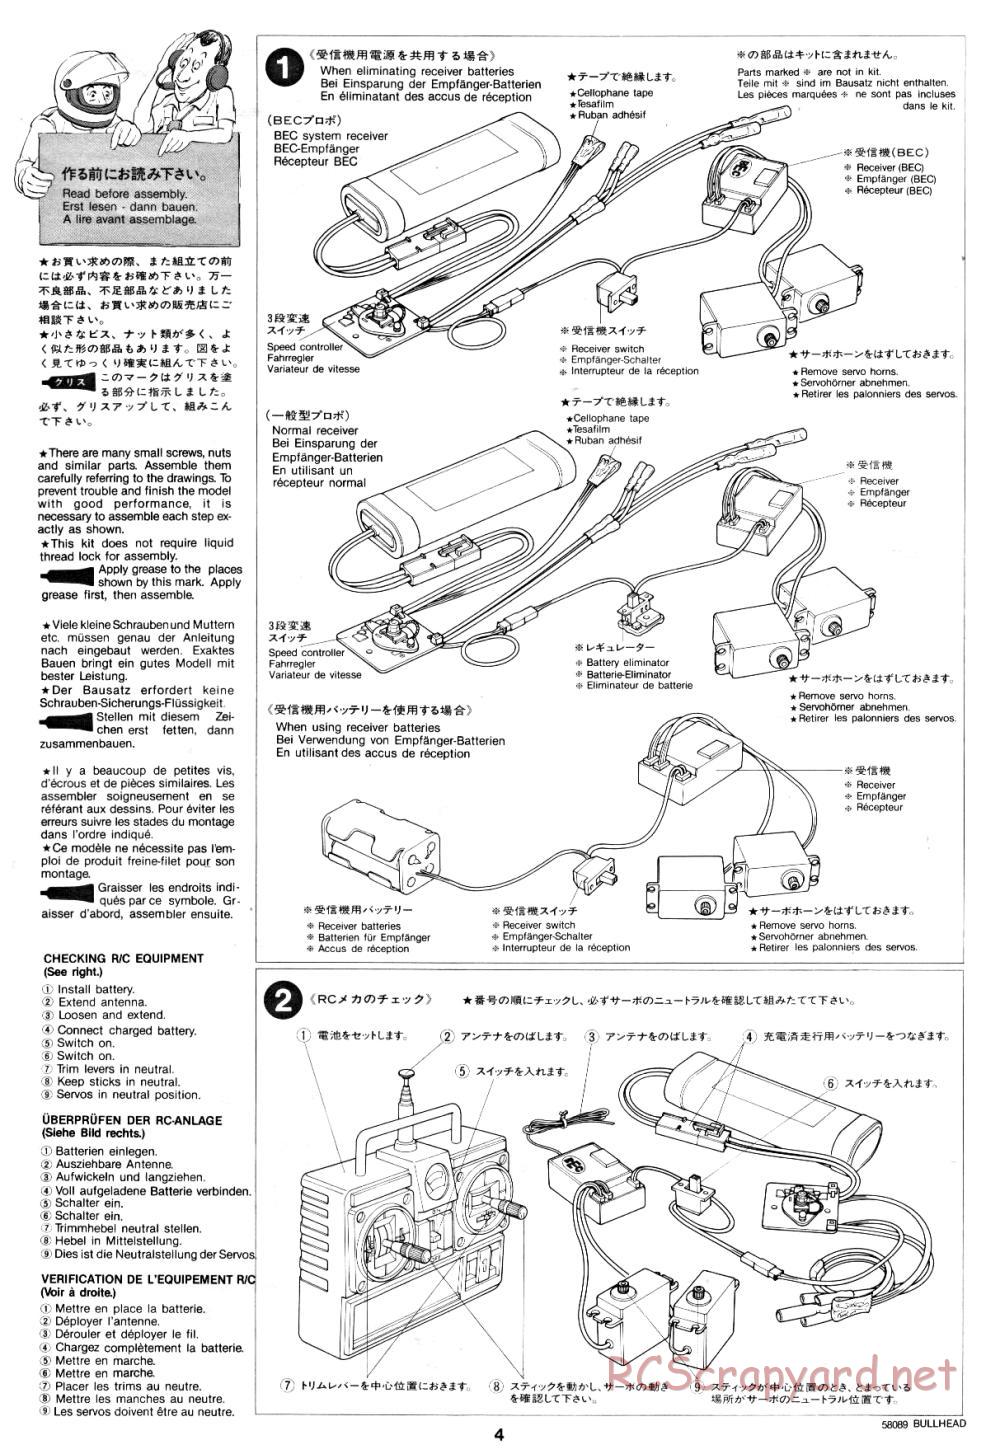 Tamiya - Bullhead - 58089 - Manual - Page 4